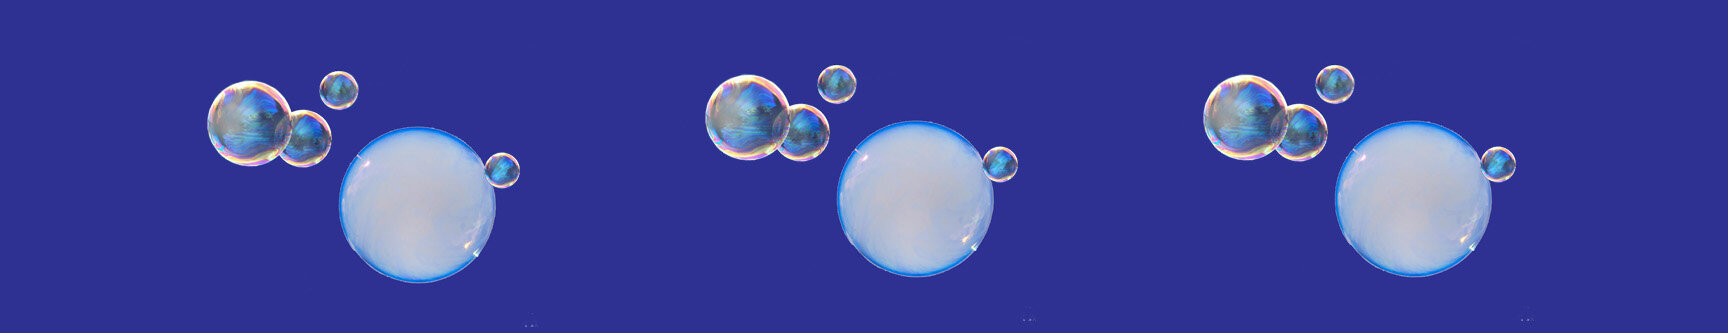 Soap bubble - Wikipedia